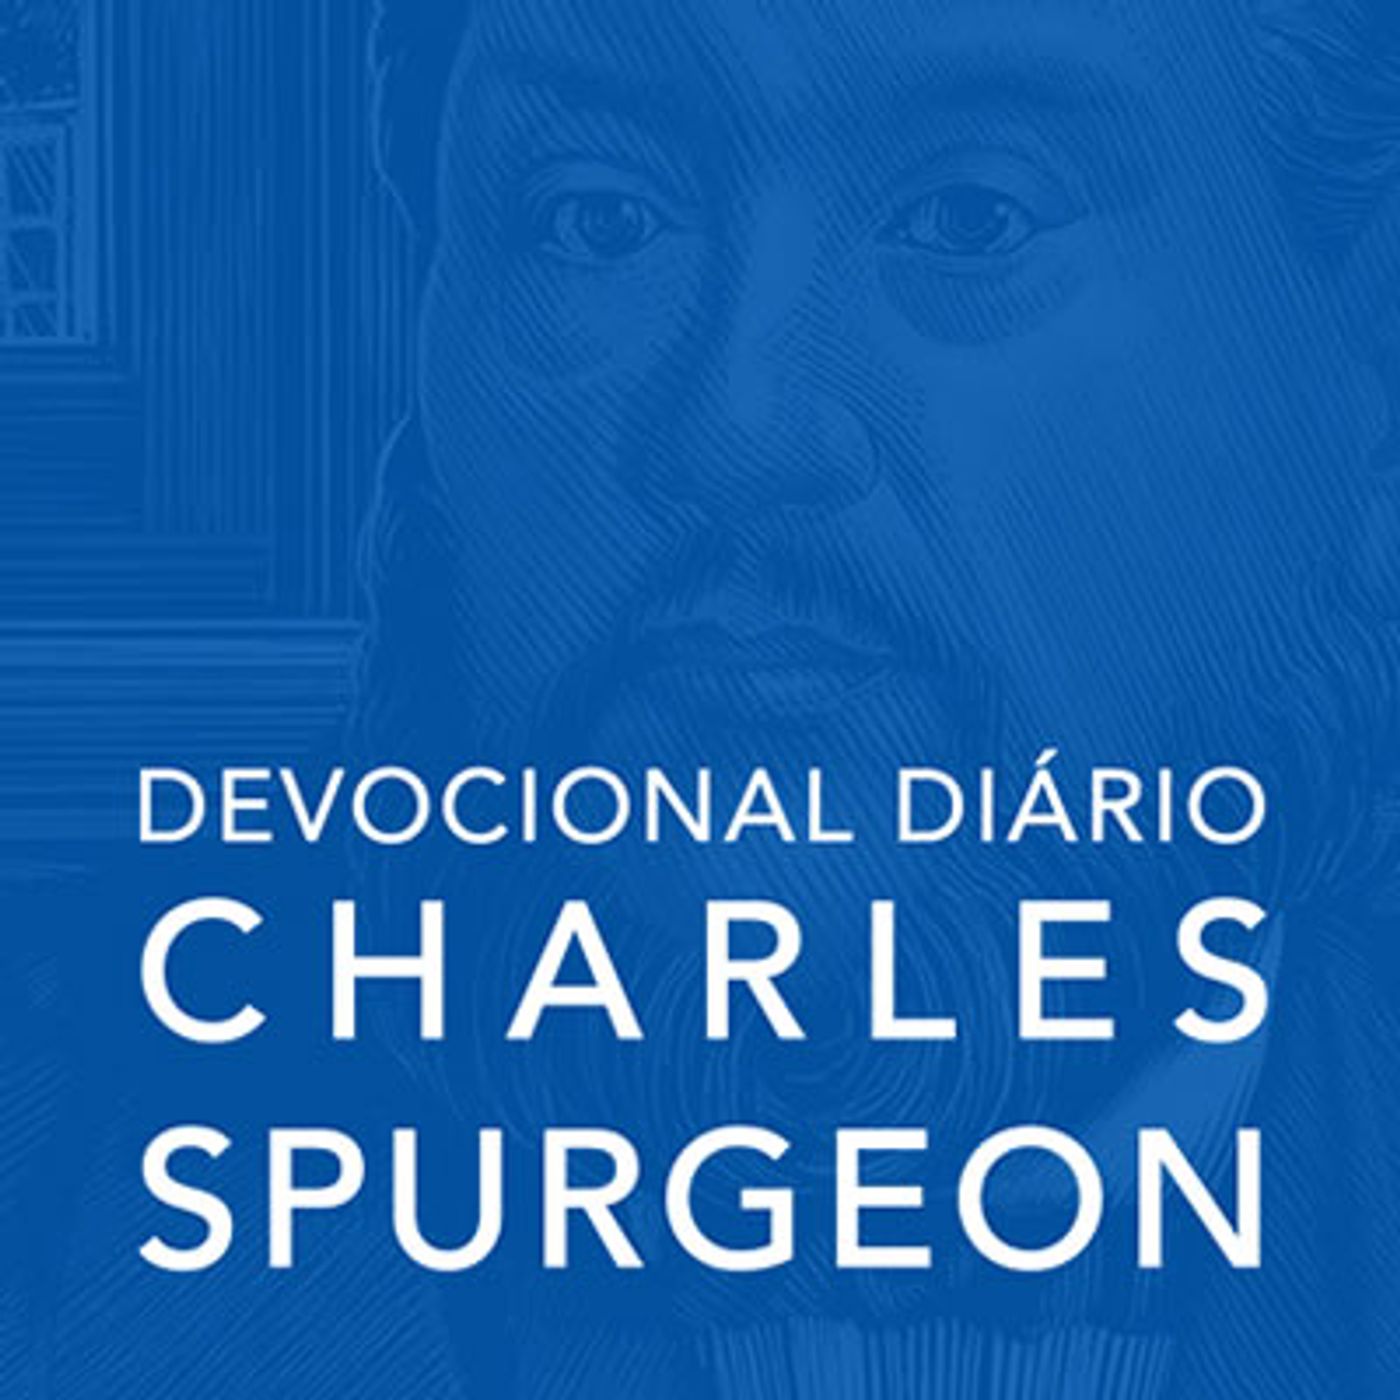 10 de maio | Devocional Diário CHARLES SPURGEON